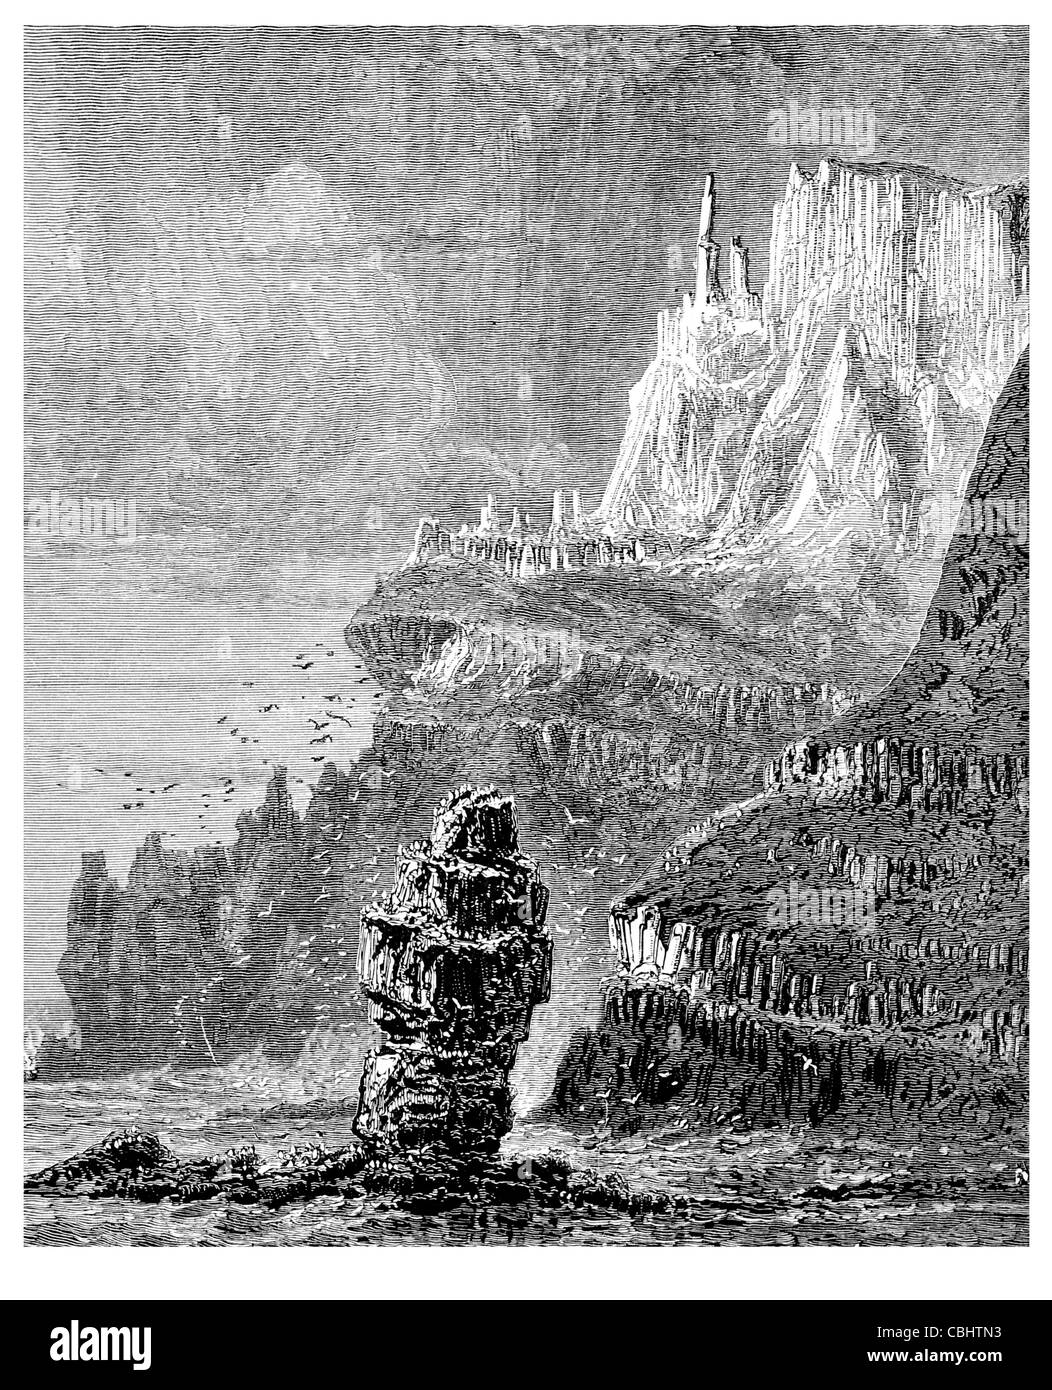 Le Chimney Tops Giant's Causeway côte d'Antrim volcaniques anciens irlandais Irlande colonnes de basalte de l'UNESCO Site du patrimoine mondial Banque D'Images